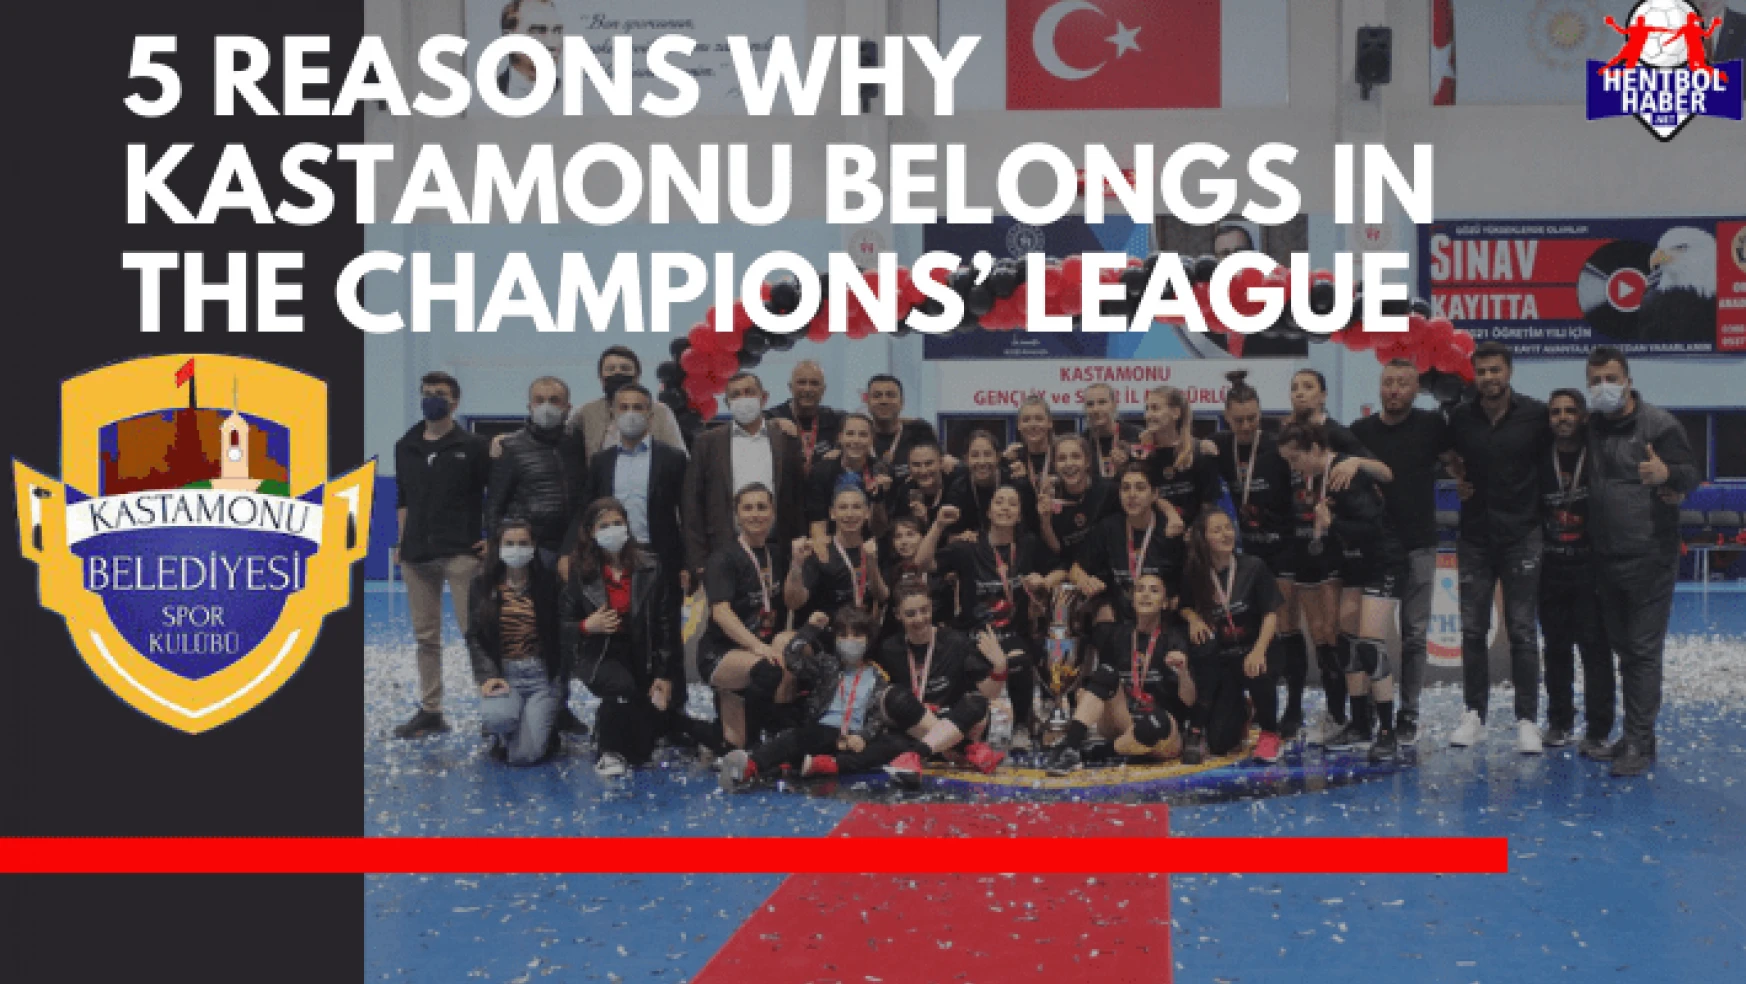 5 Reasons Why Kastamonu Belongs in the Champions' League